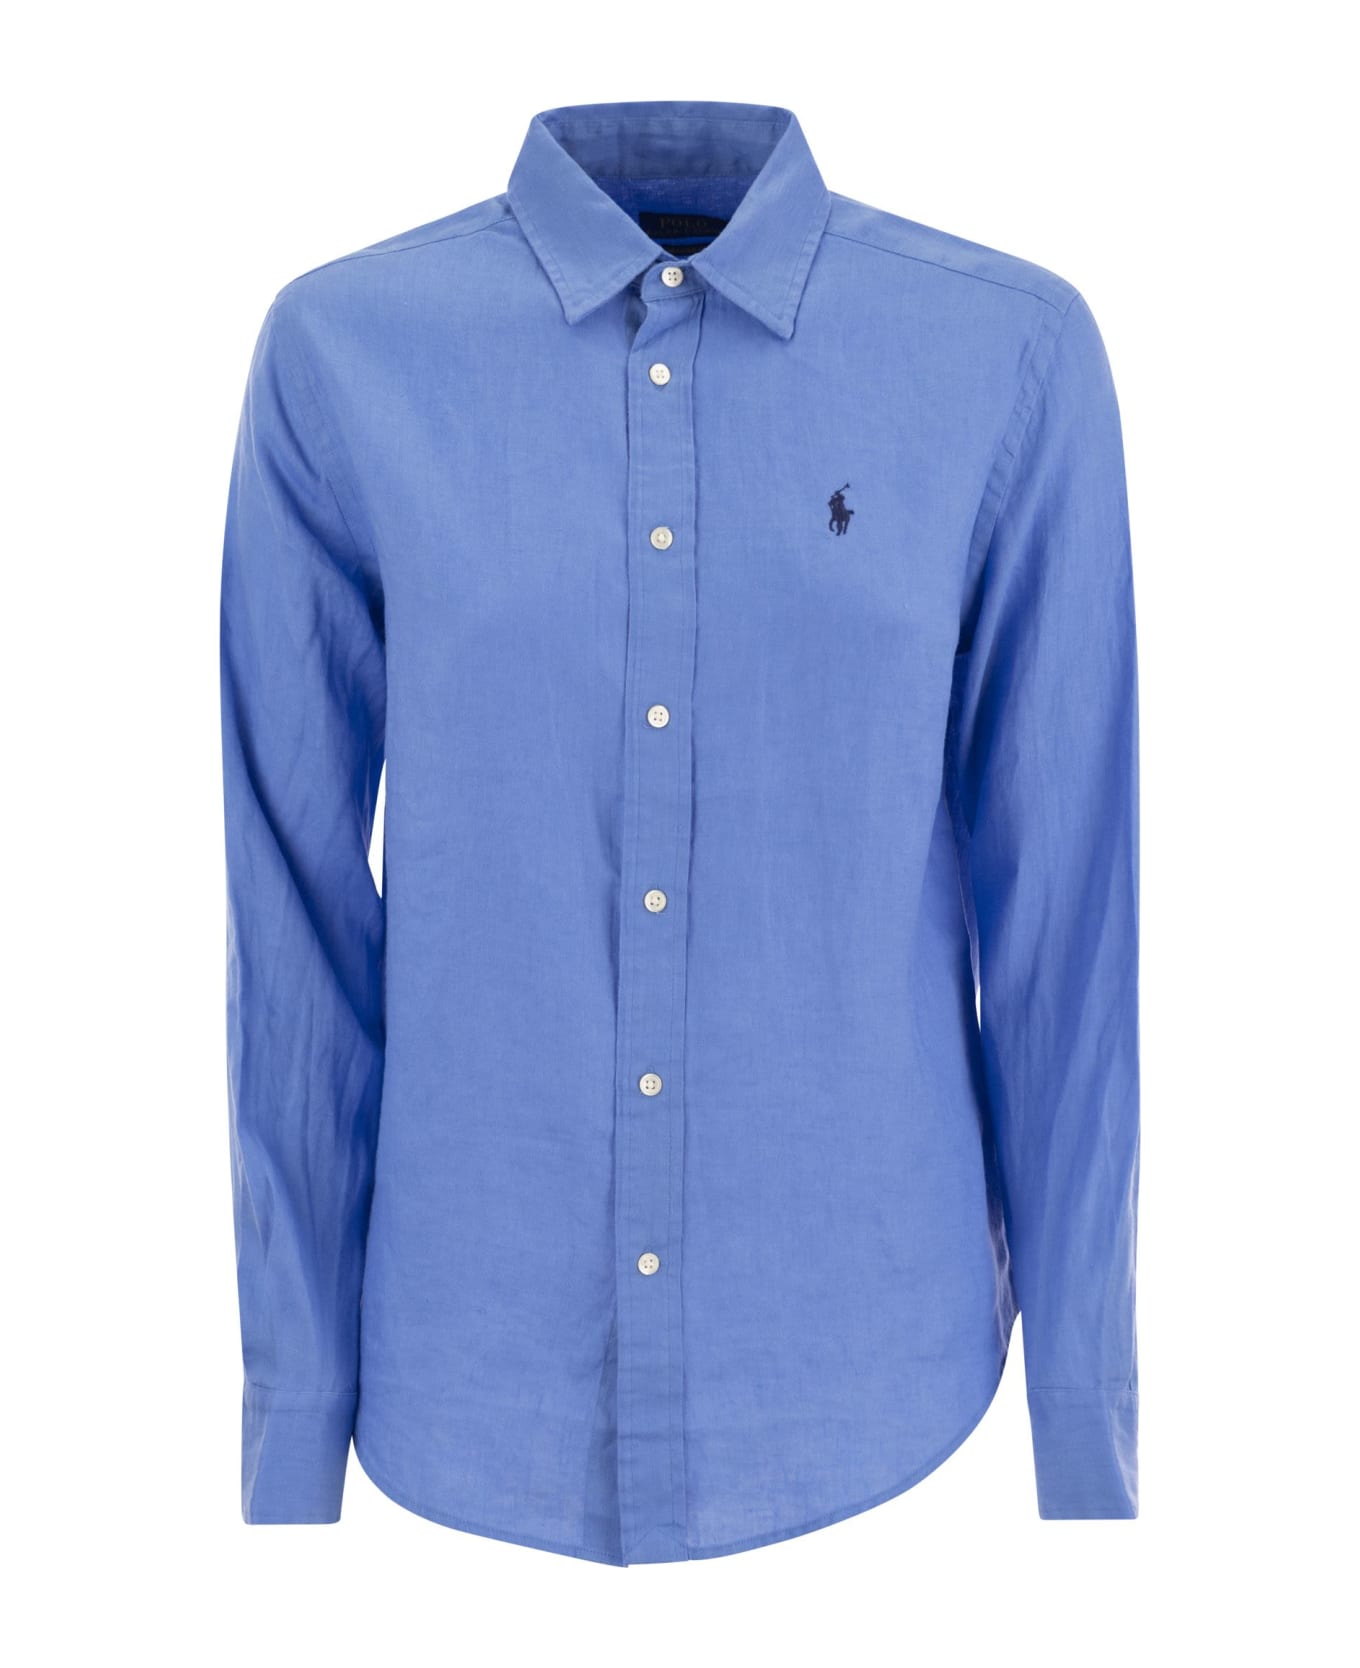 Polo Ralph Lauren Linen Shirt - Light Blue